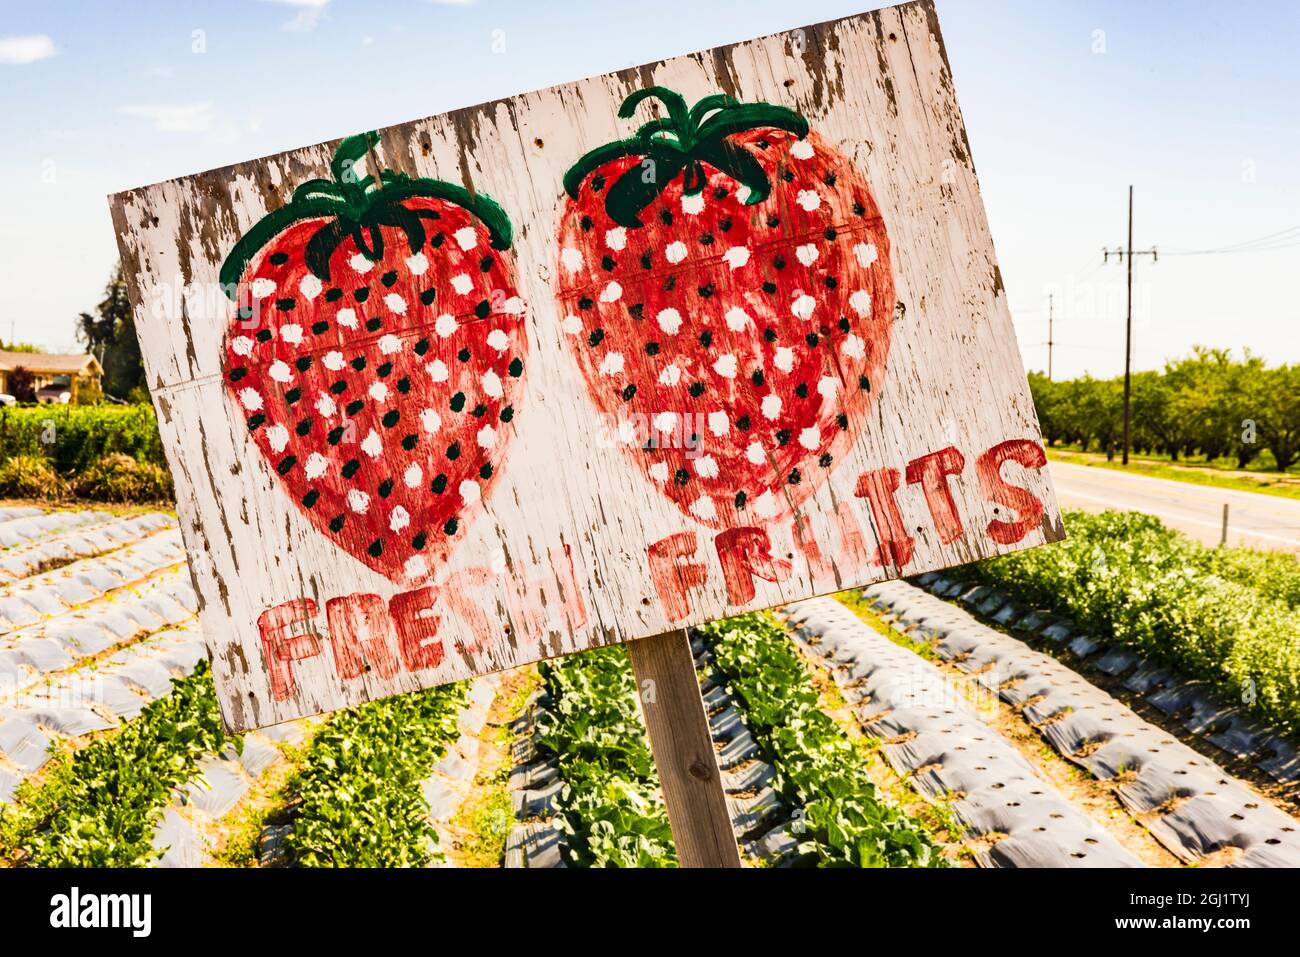 États-Unis, Californie, Central Valley, San Joaquin River Valley, Modesto, le jardin d'aan Saechao et le panneau pour les fraises vendues à son stand de bord de route sur Maze Banque D'Images